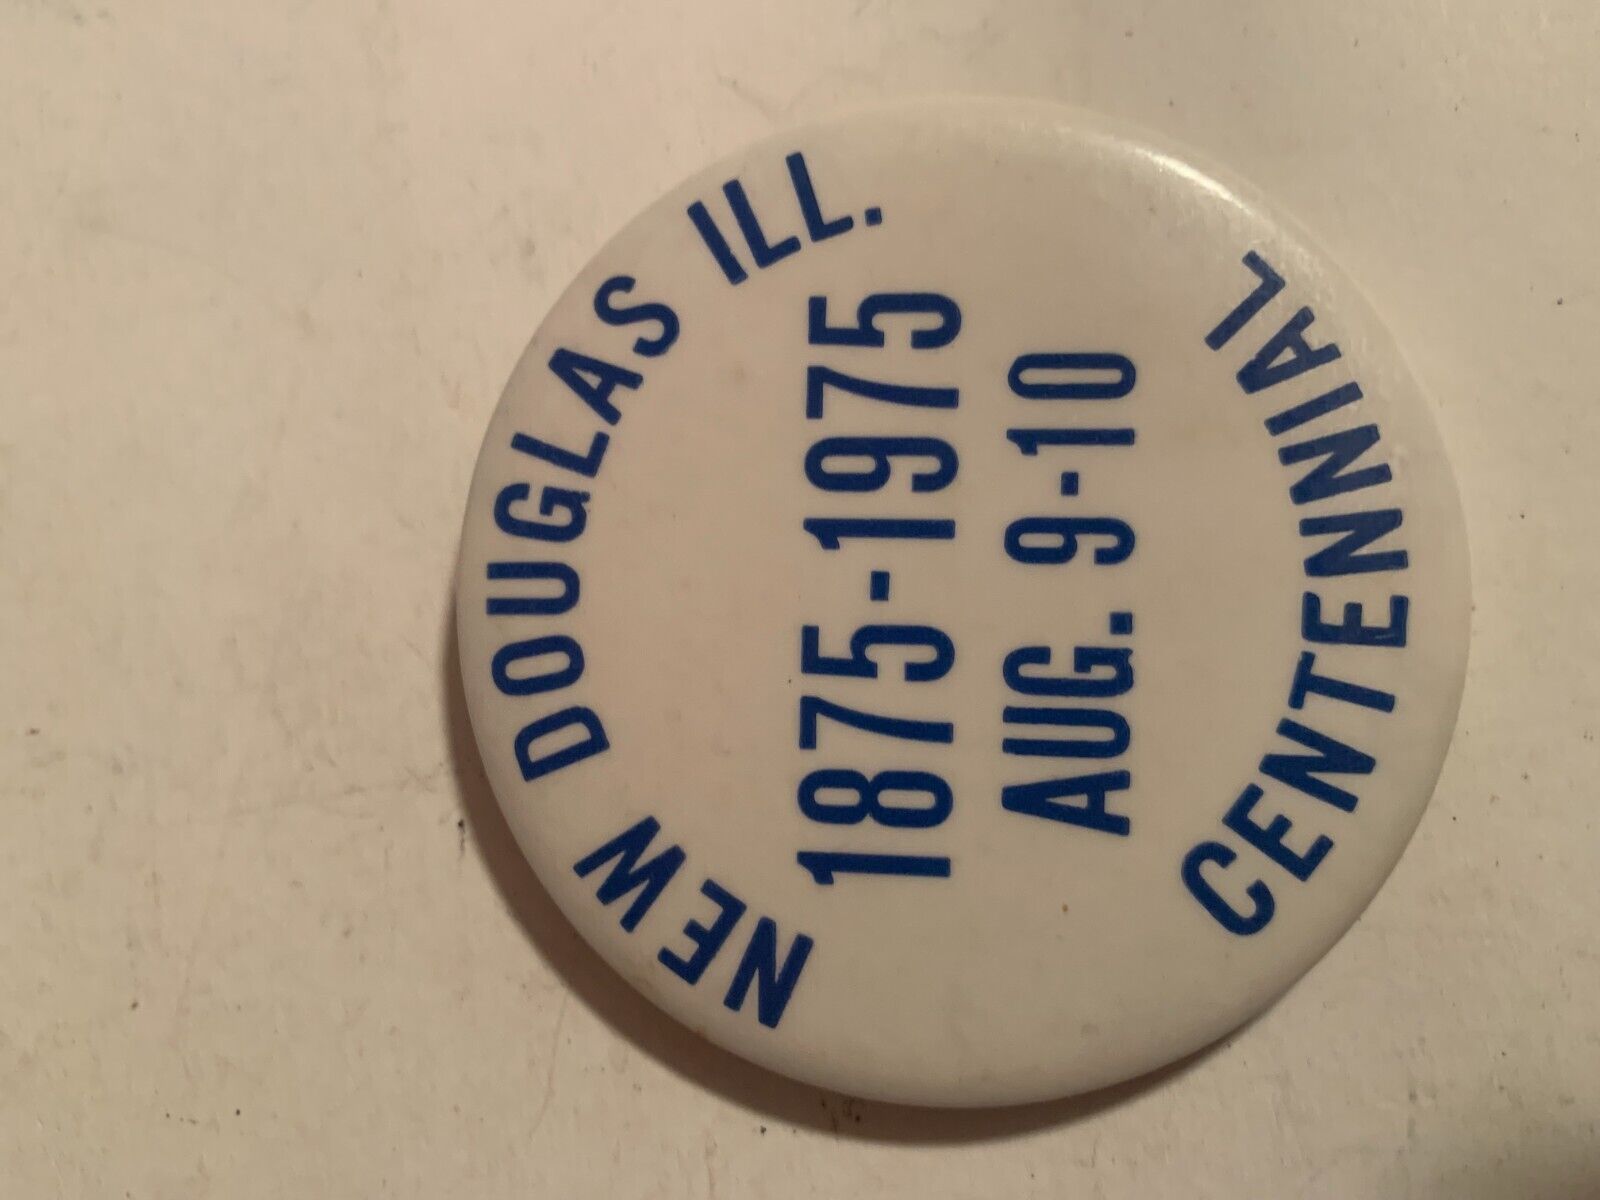 NEW DOUGLAS ILL. CENTENNIAL 1875-1975 COLLECTIBLE PIN